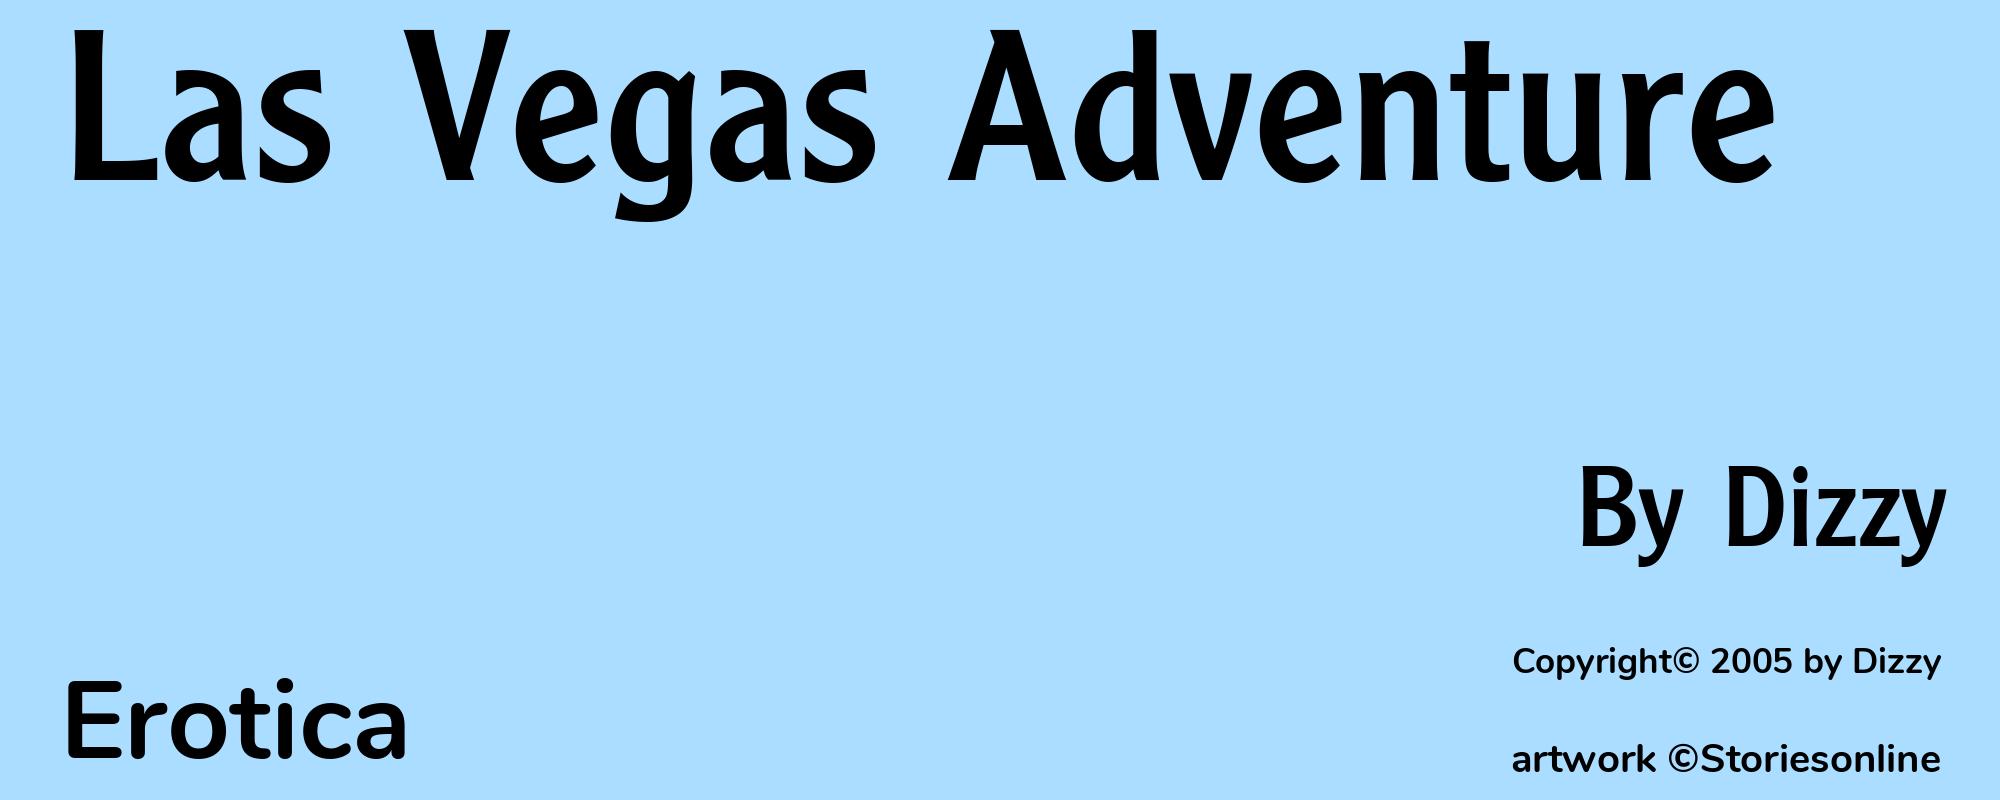 Las Vegas Adventure - Cover